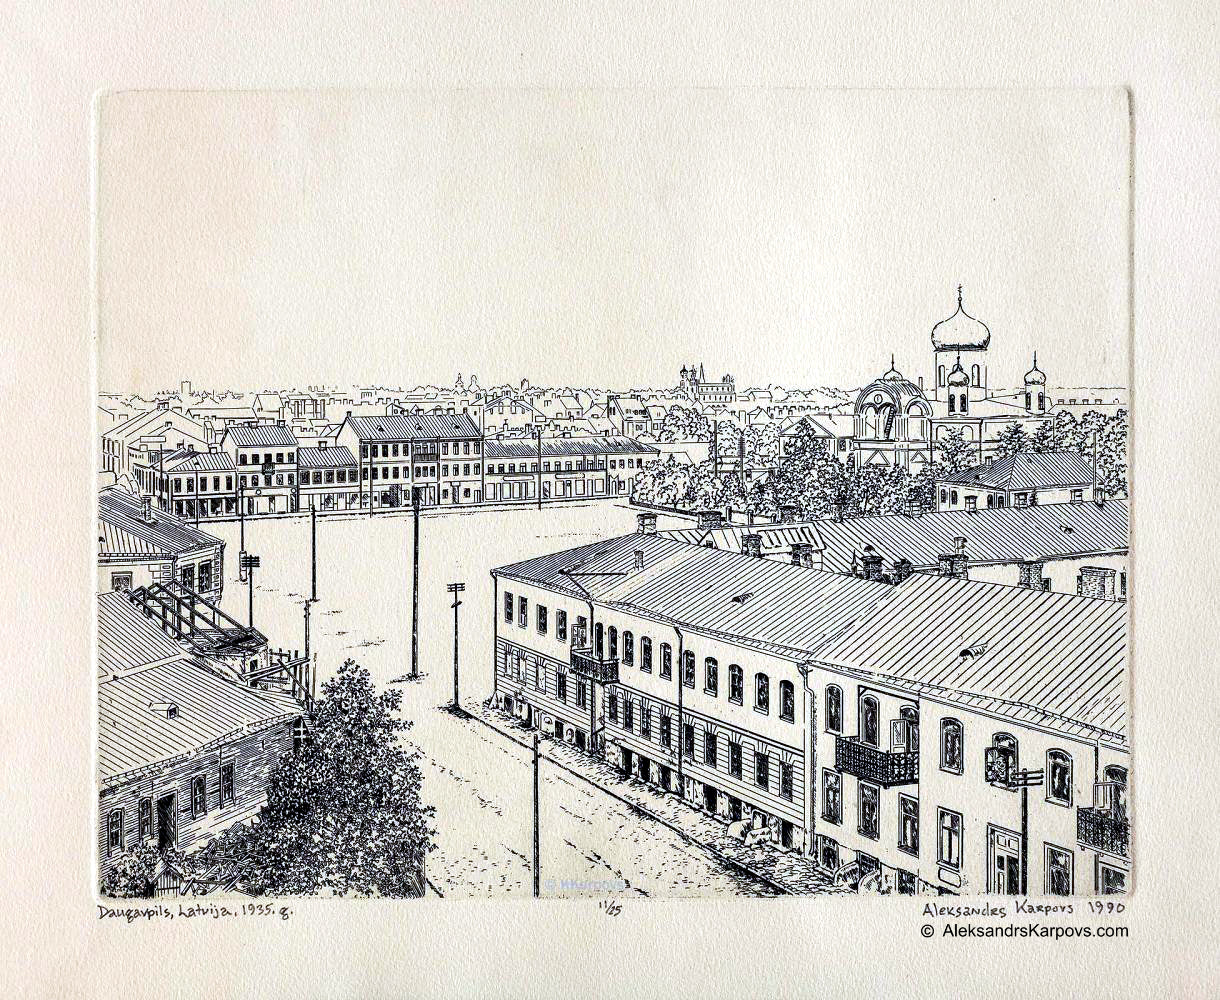 Daugavpils. Latvia. 1935